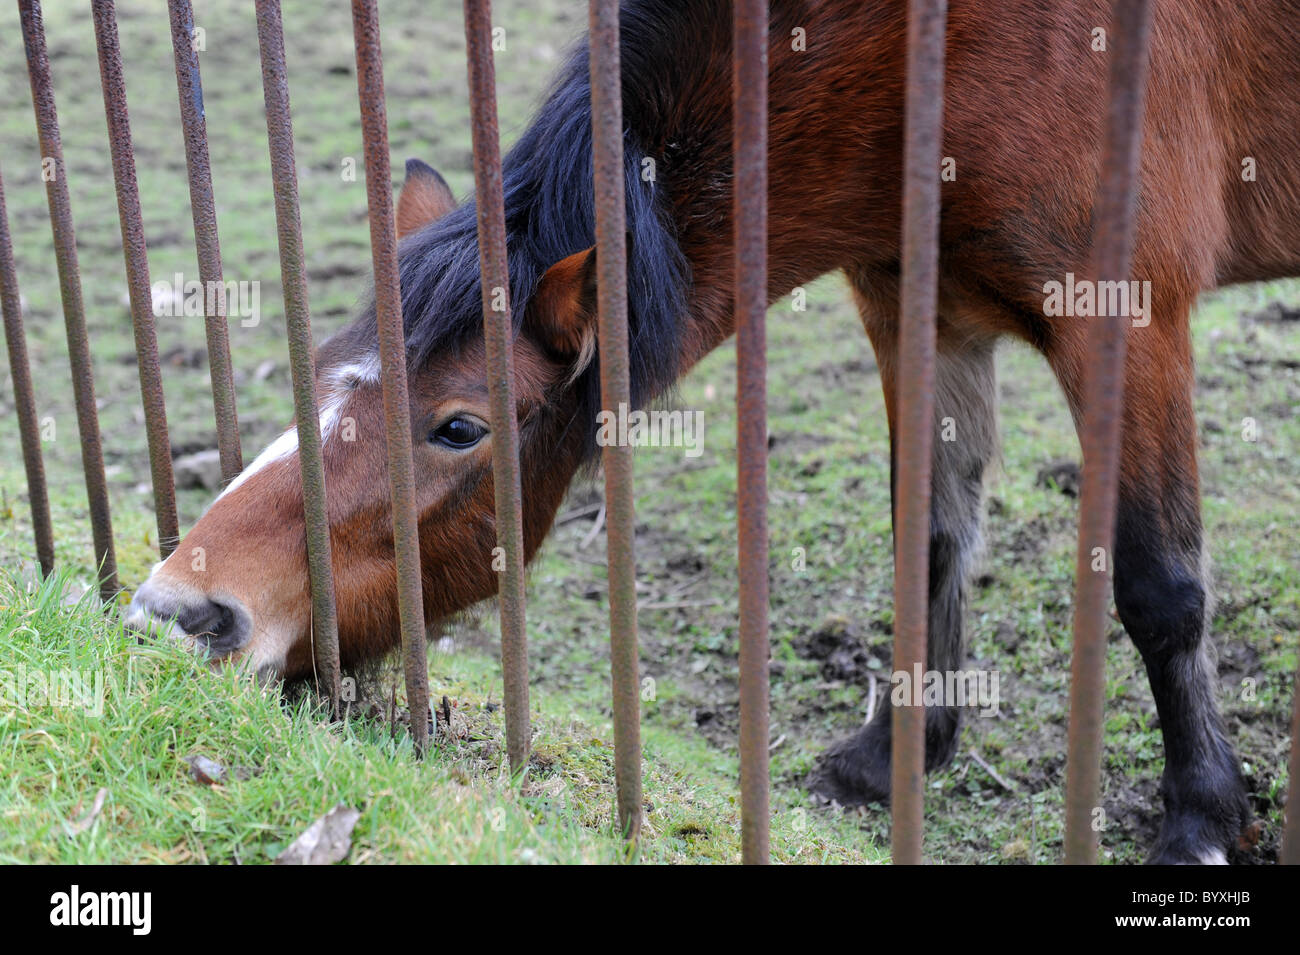 Alimentazione Pony attraverso la ringhiera in ferro regno unito Foto Stock